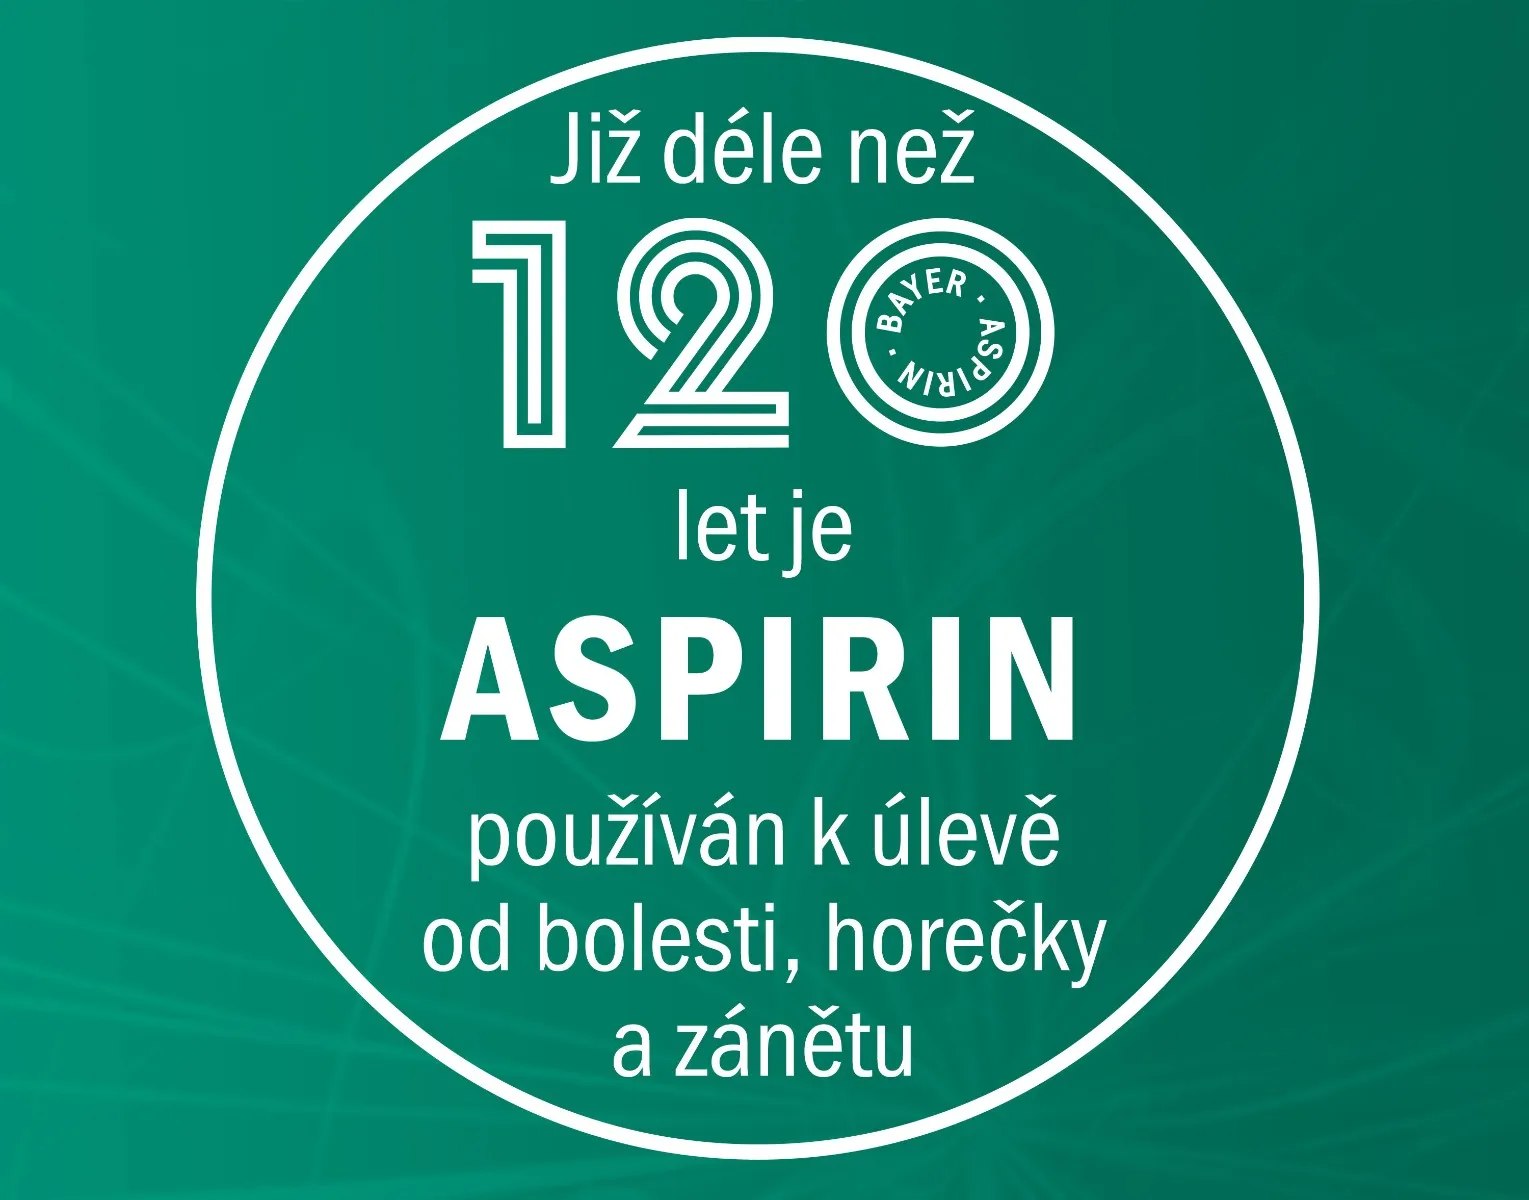 Aspirin 500 mg 20 tablet